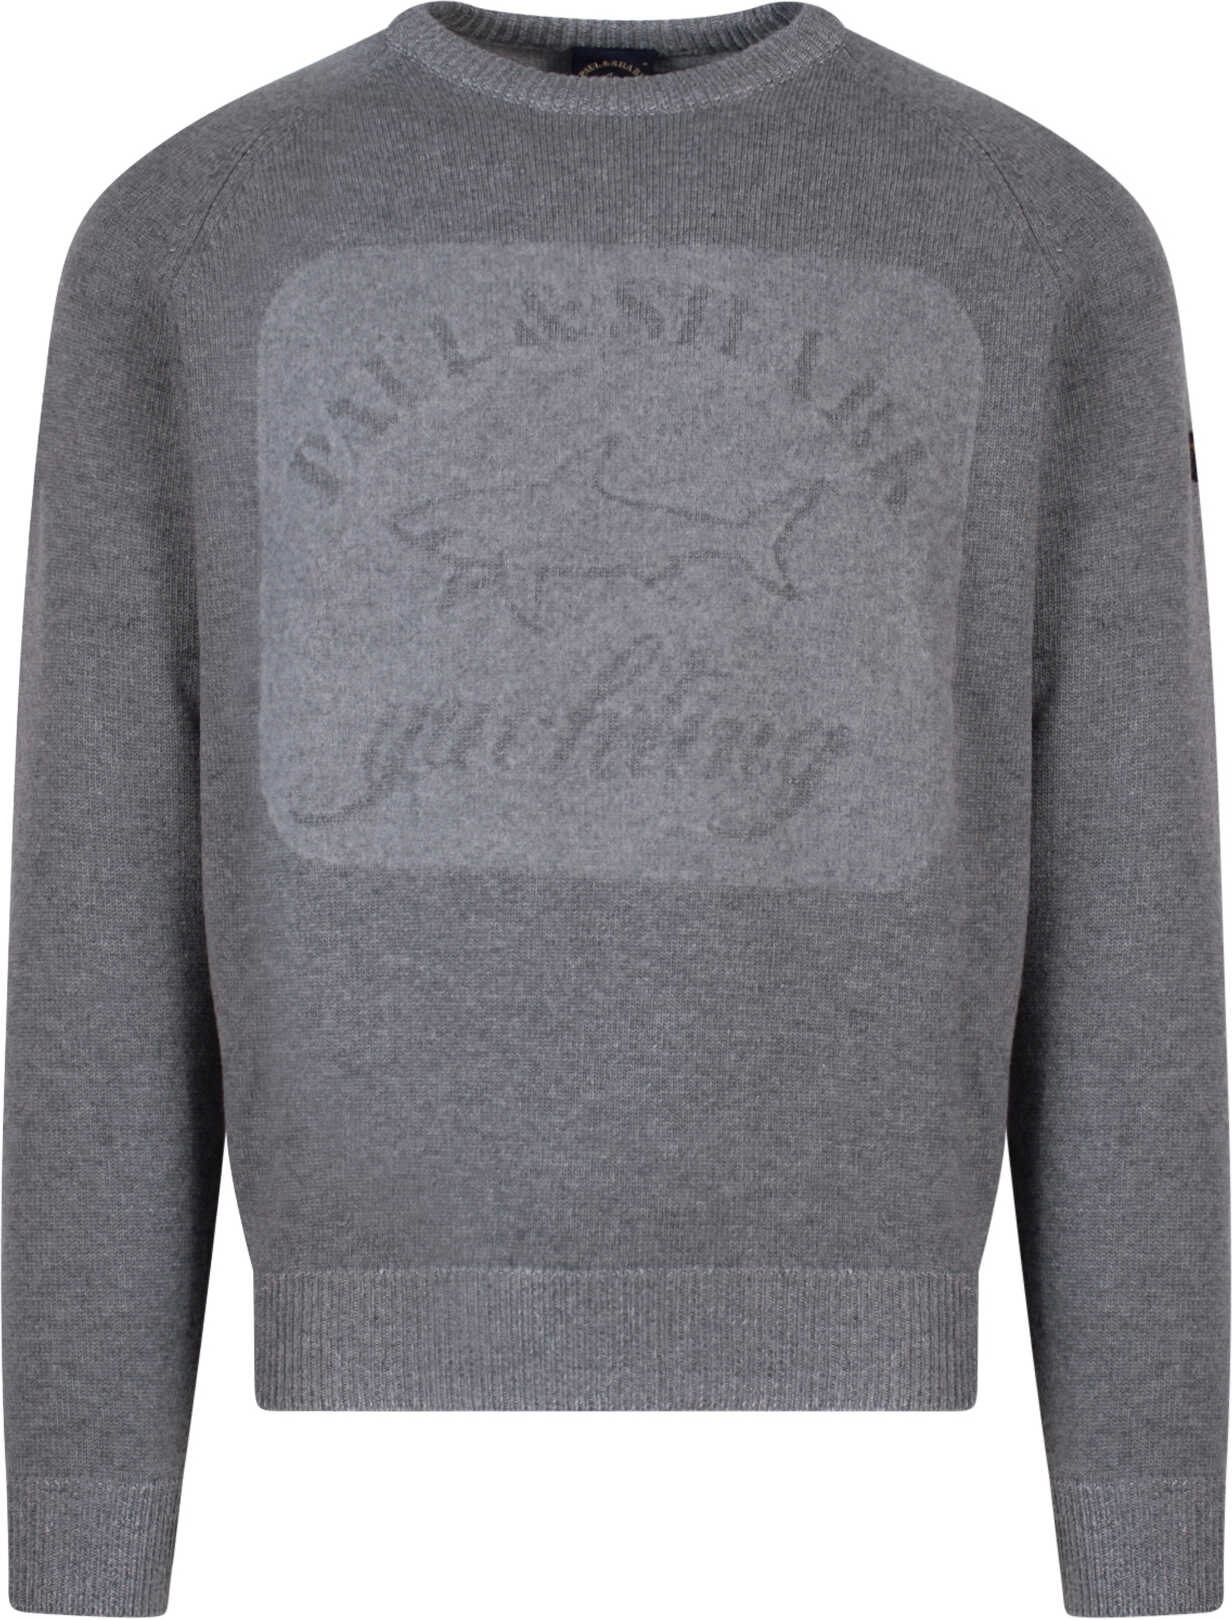 Paul&Shark Sweater Grey